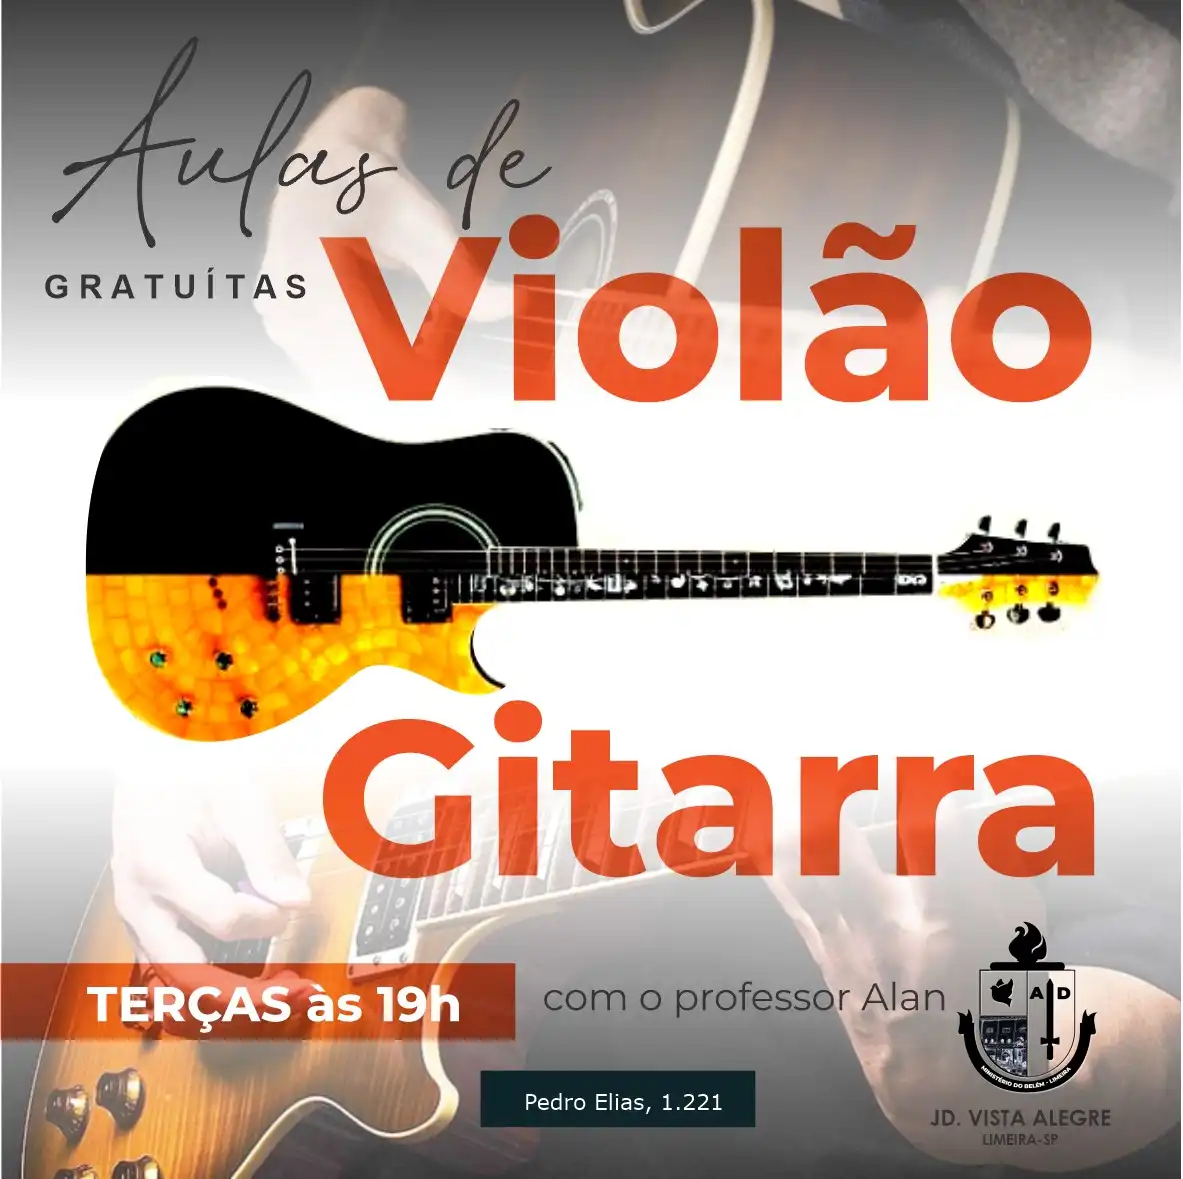 
Propaganda Post Aulas de Violão e Guitarra



